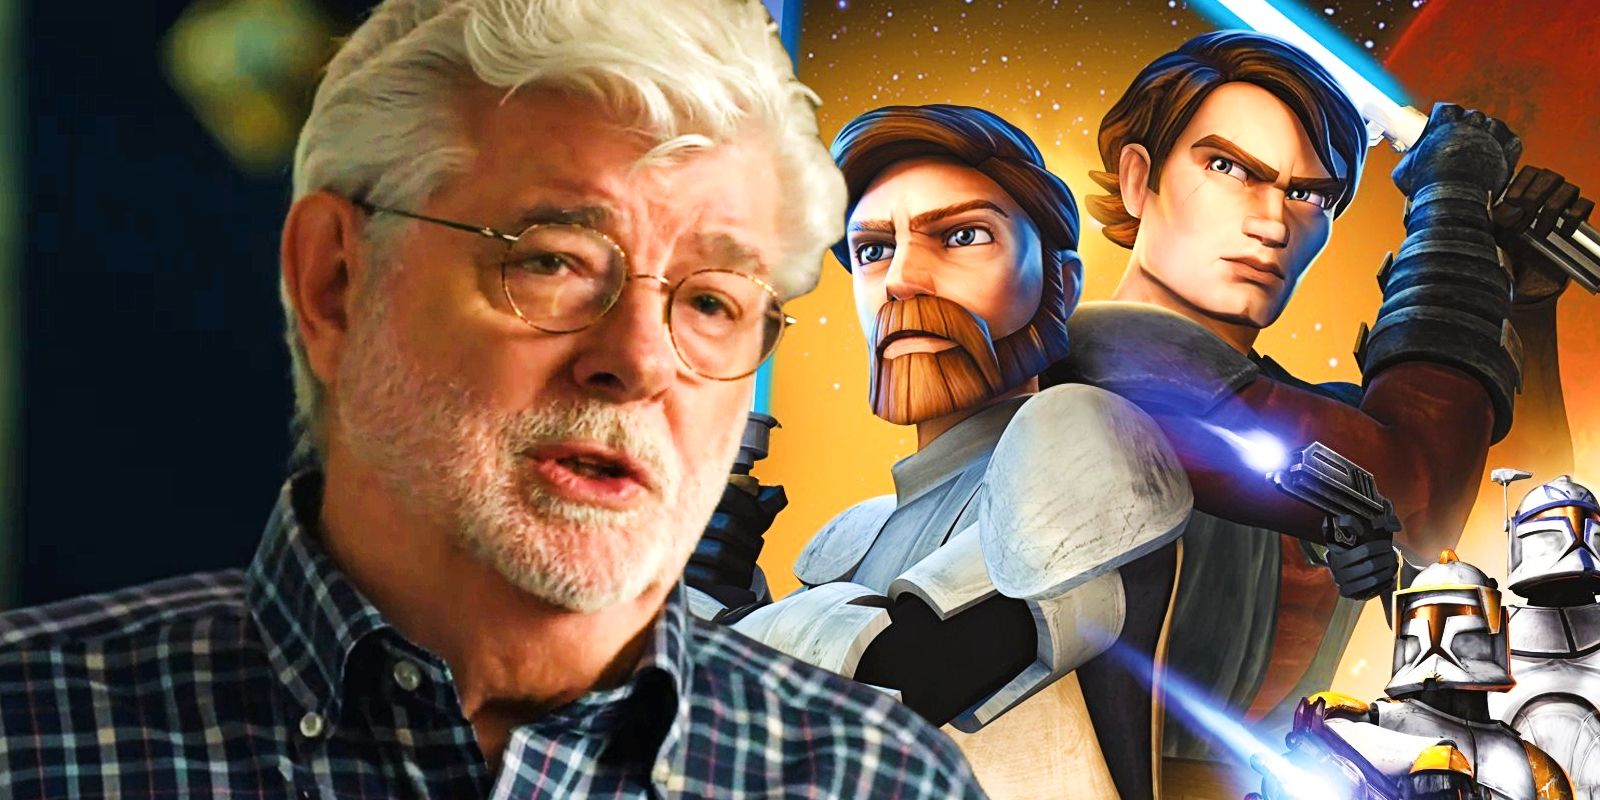 George Lucas in front of Obi-Wan Kenobi and Anakin Skywalker